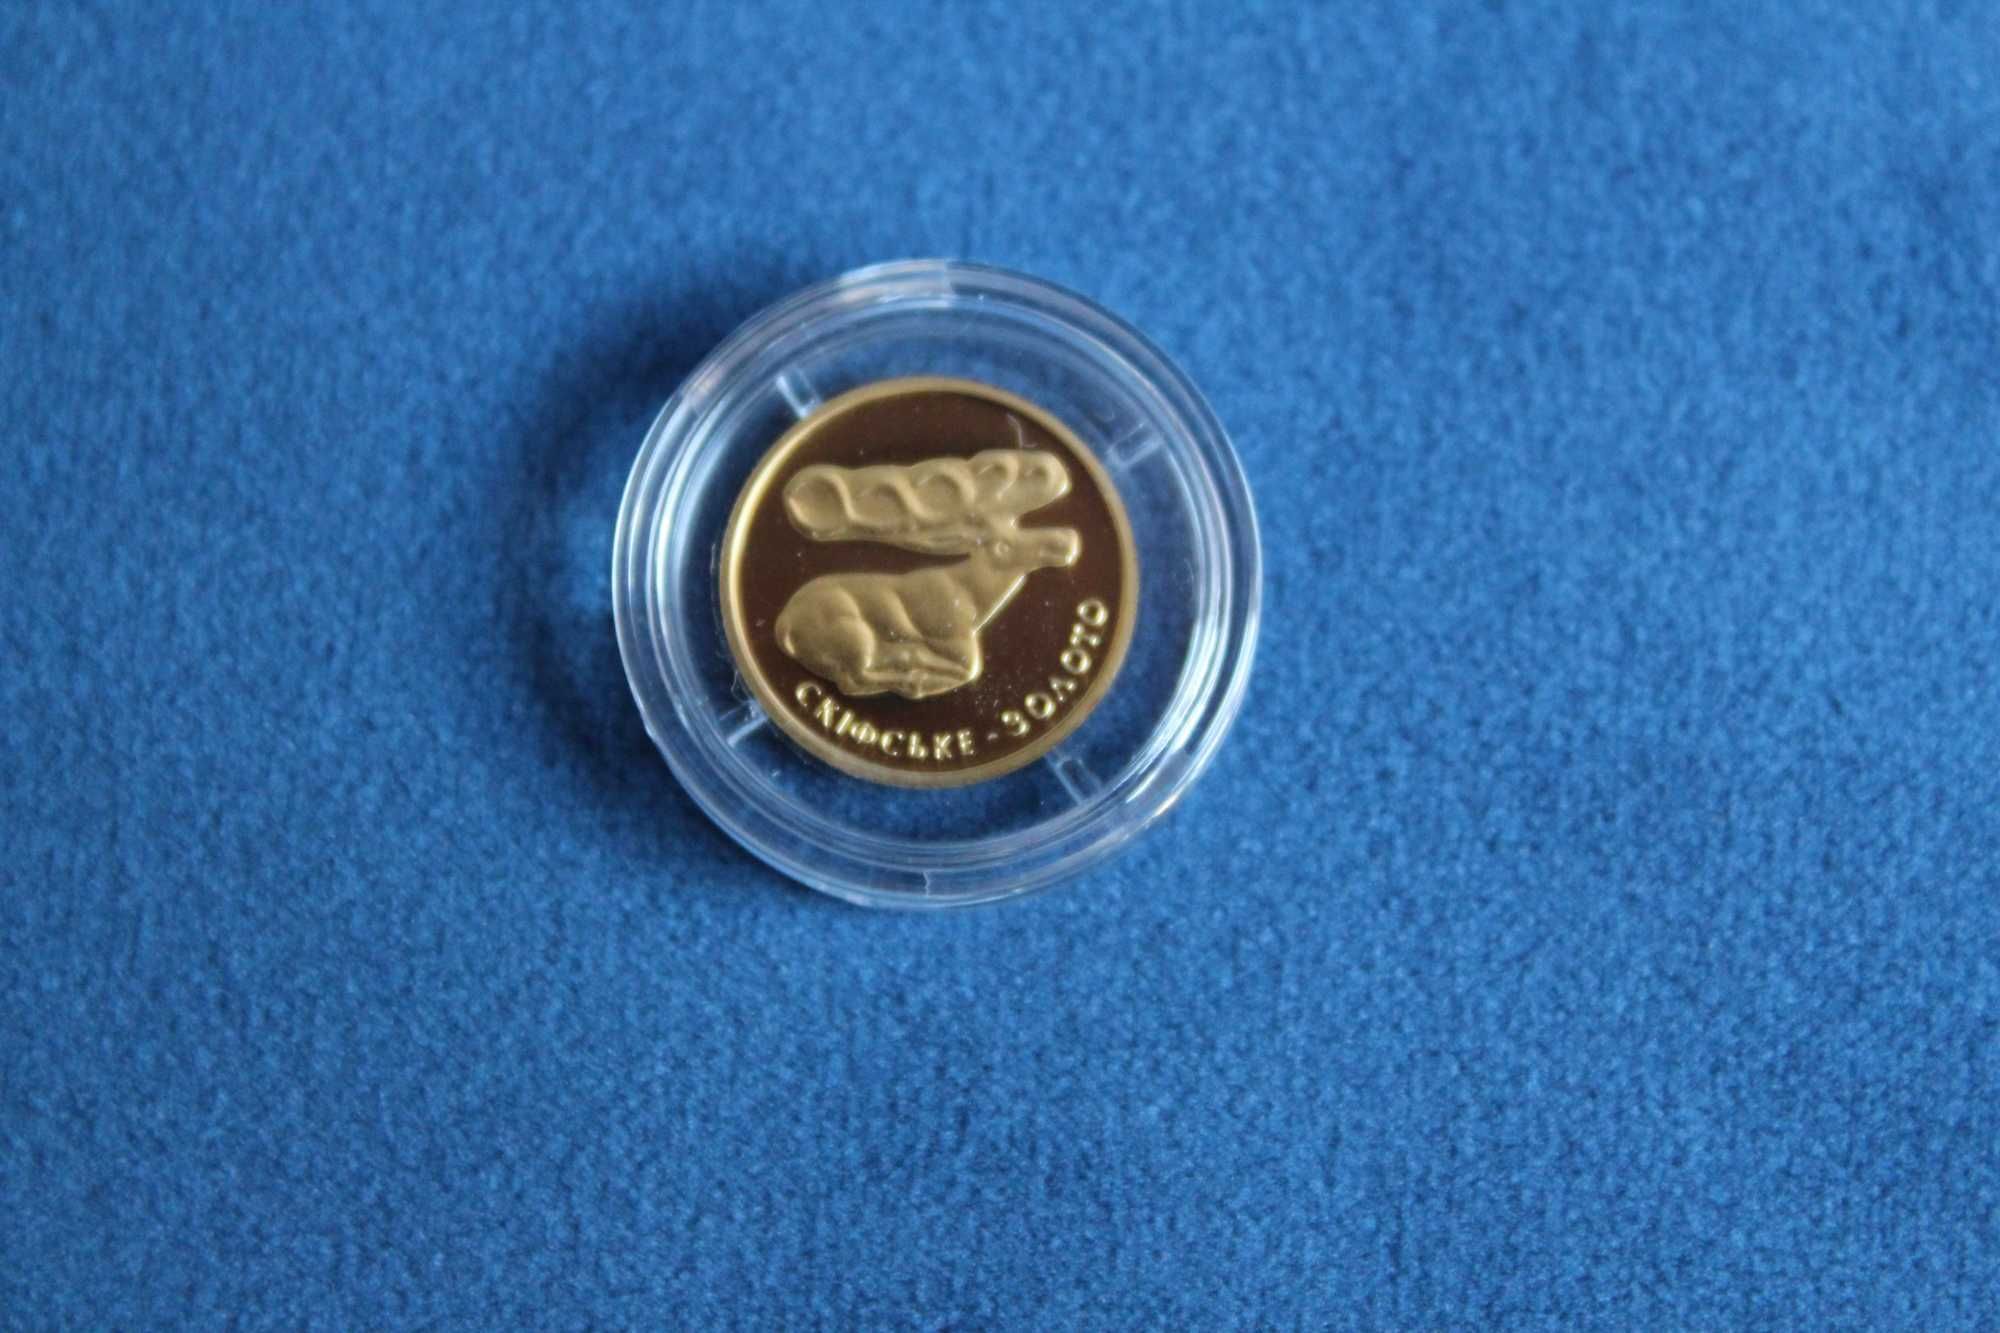 Монета Скифское золото. Олень 2 грн.